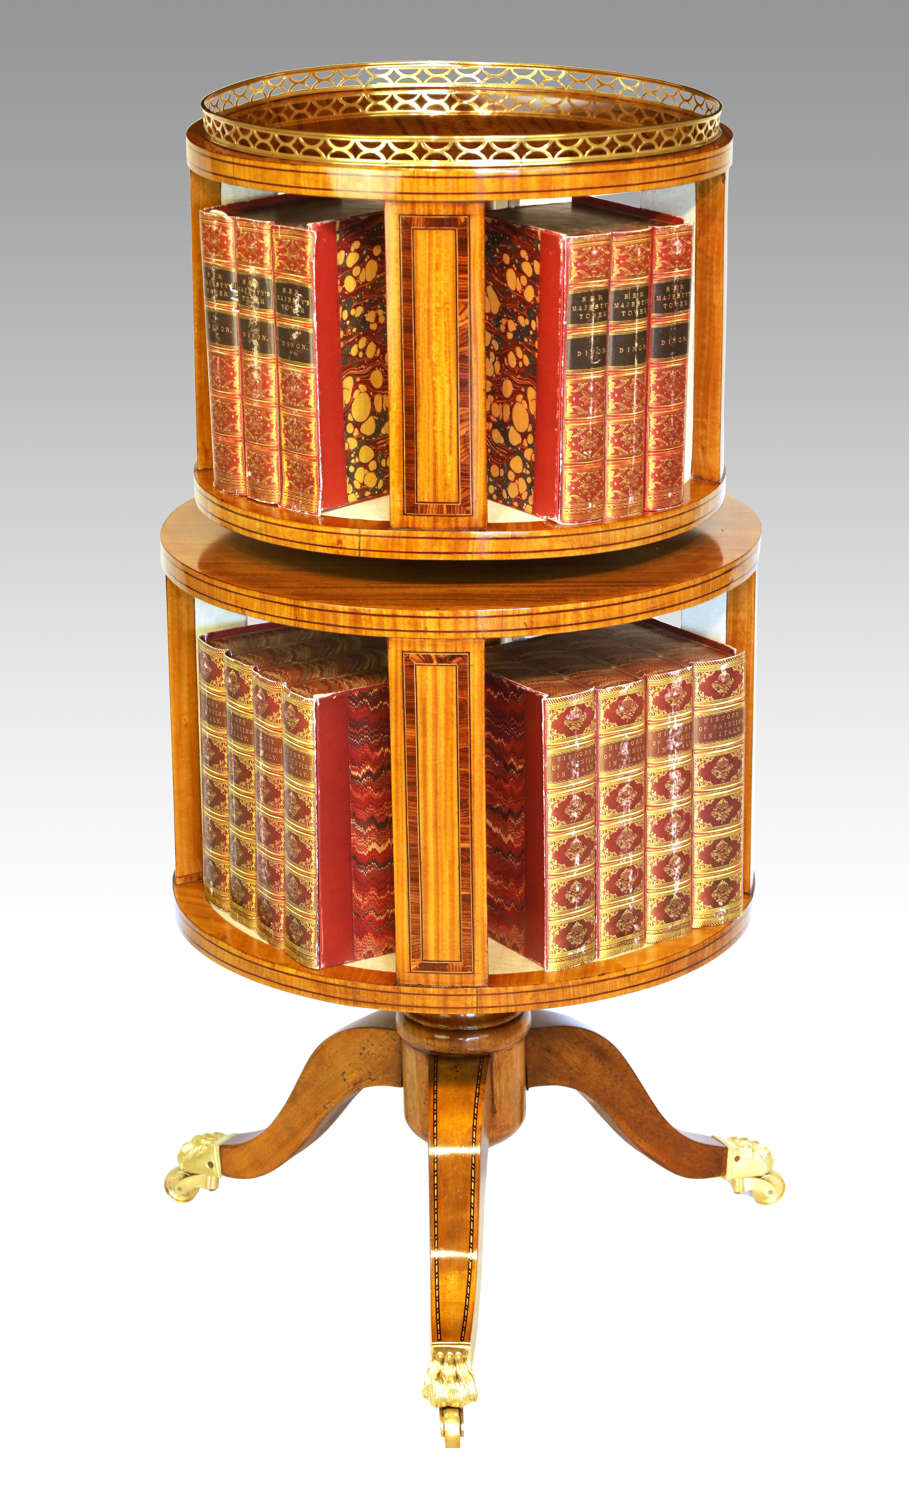 A Fine Victorian Burr Walnut Inlaid Revolving Library Bookcase